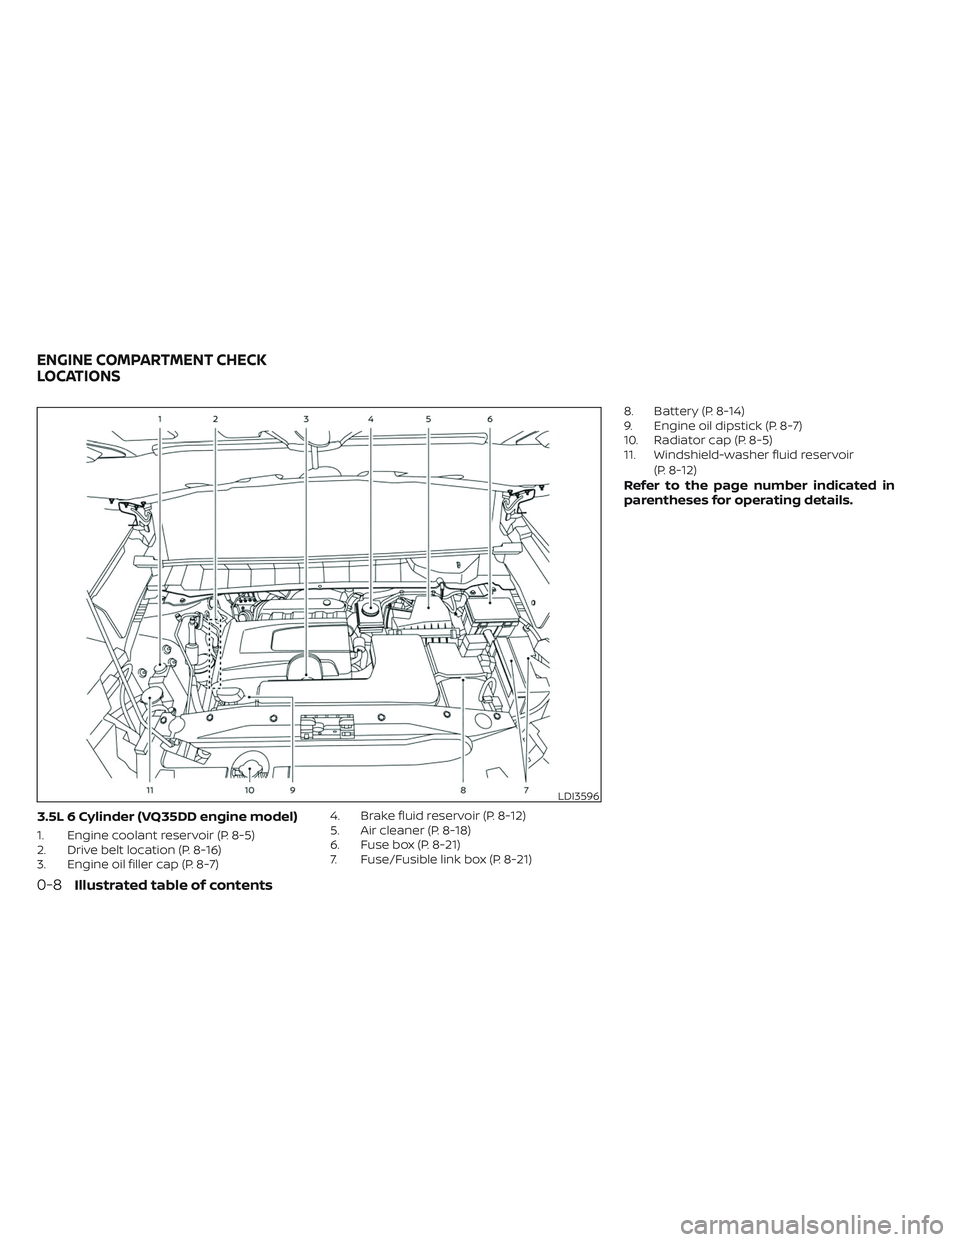 NISSAN PATHFINDER 2022  Owner´s Manual 3.5L 6 Cylinder (VQ35DD engine model)
1. Engine coolant reservoir (P. 8-5)
2. Drive belt location (P. 8-16)
3. Engine oil filler cap (P. 8-7)4. Brake fluid reservoir (P. 8-12)
5. Air cleaner (P. 8-18)